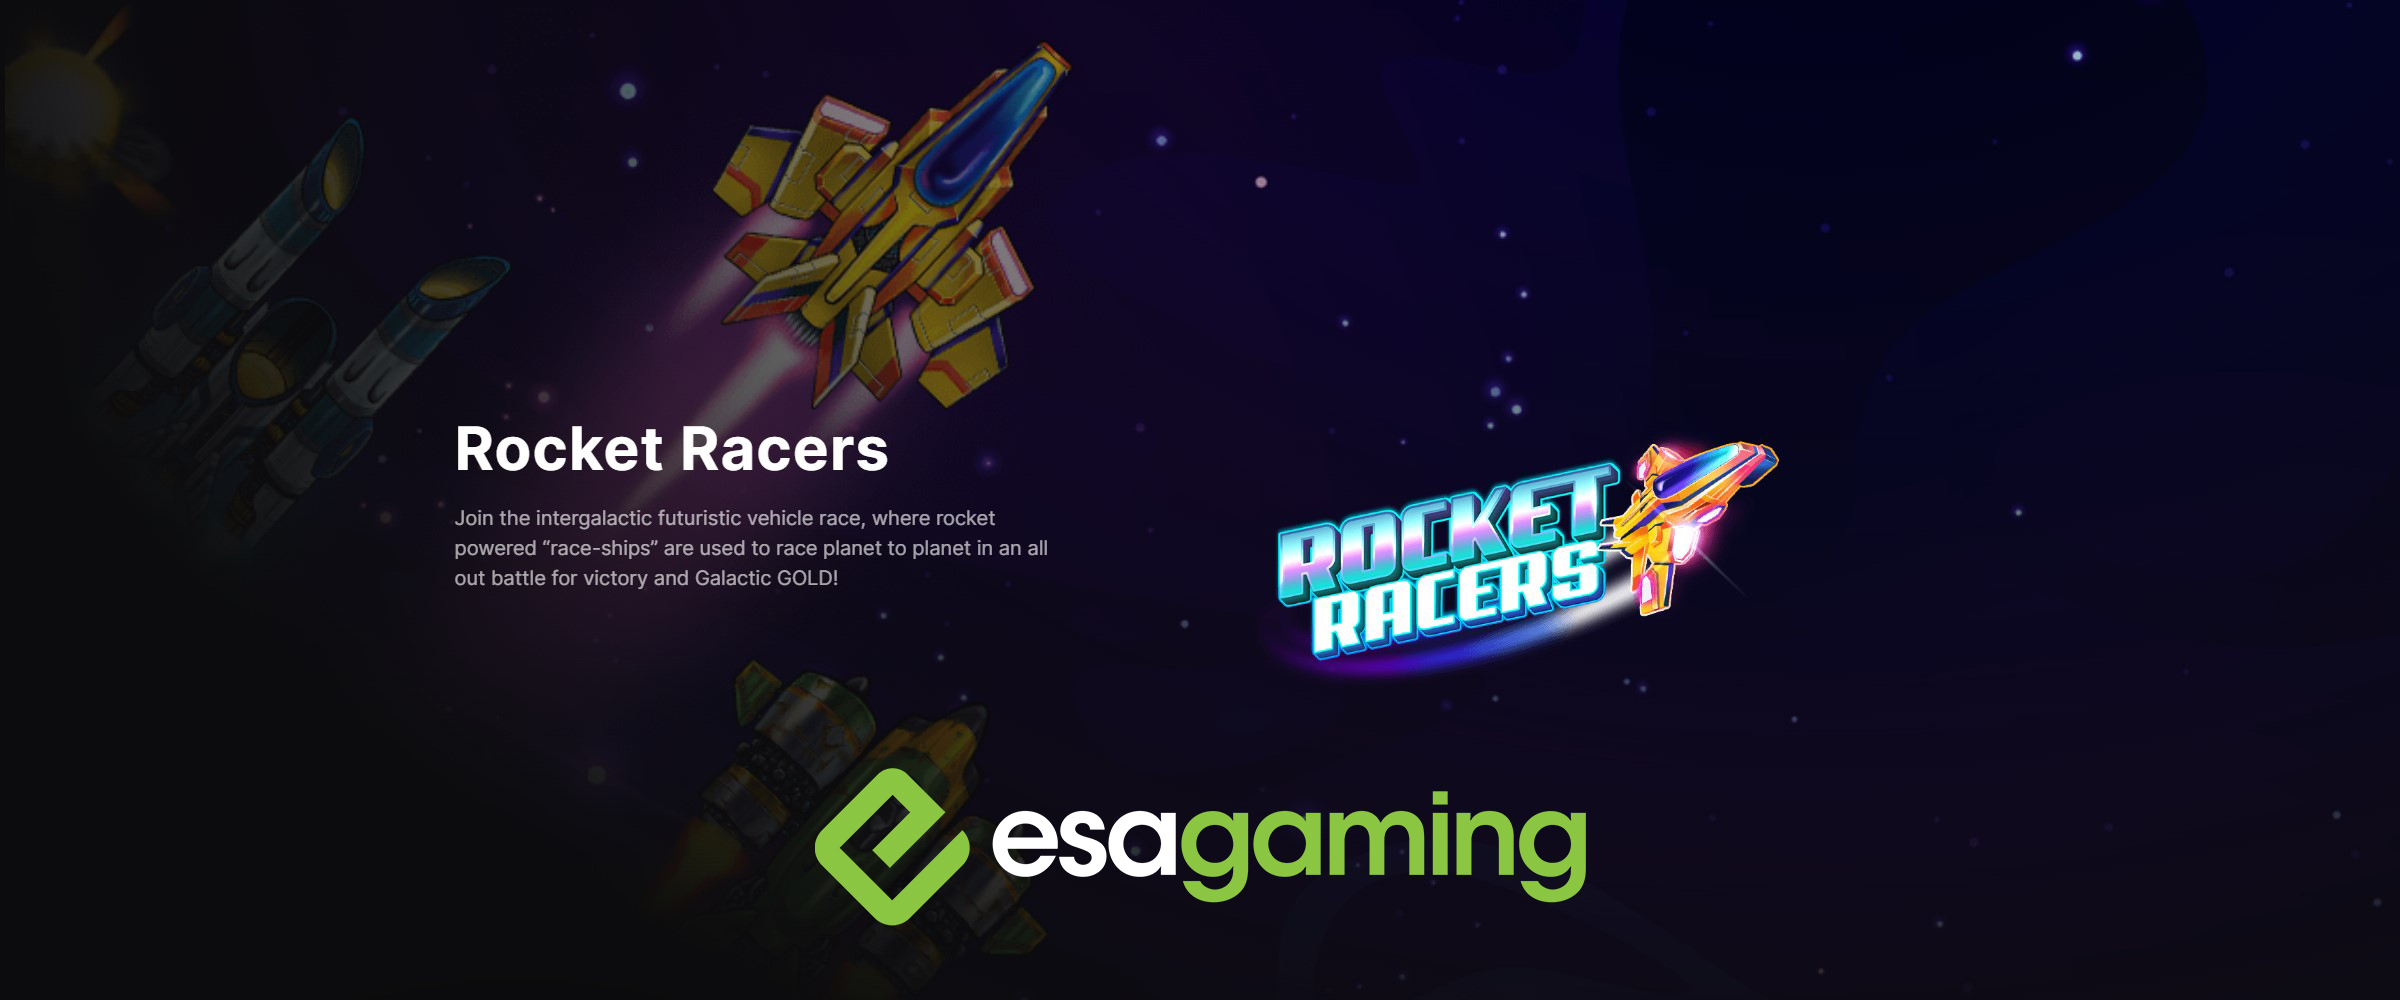 Rocket Racers by Esa Gaming